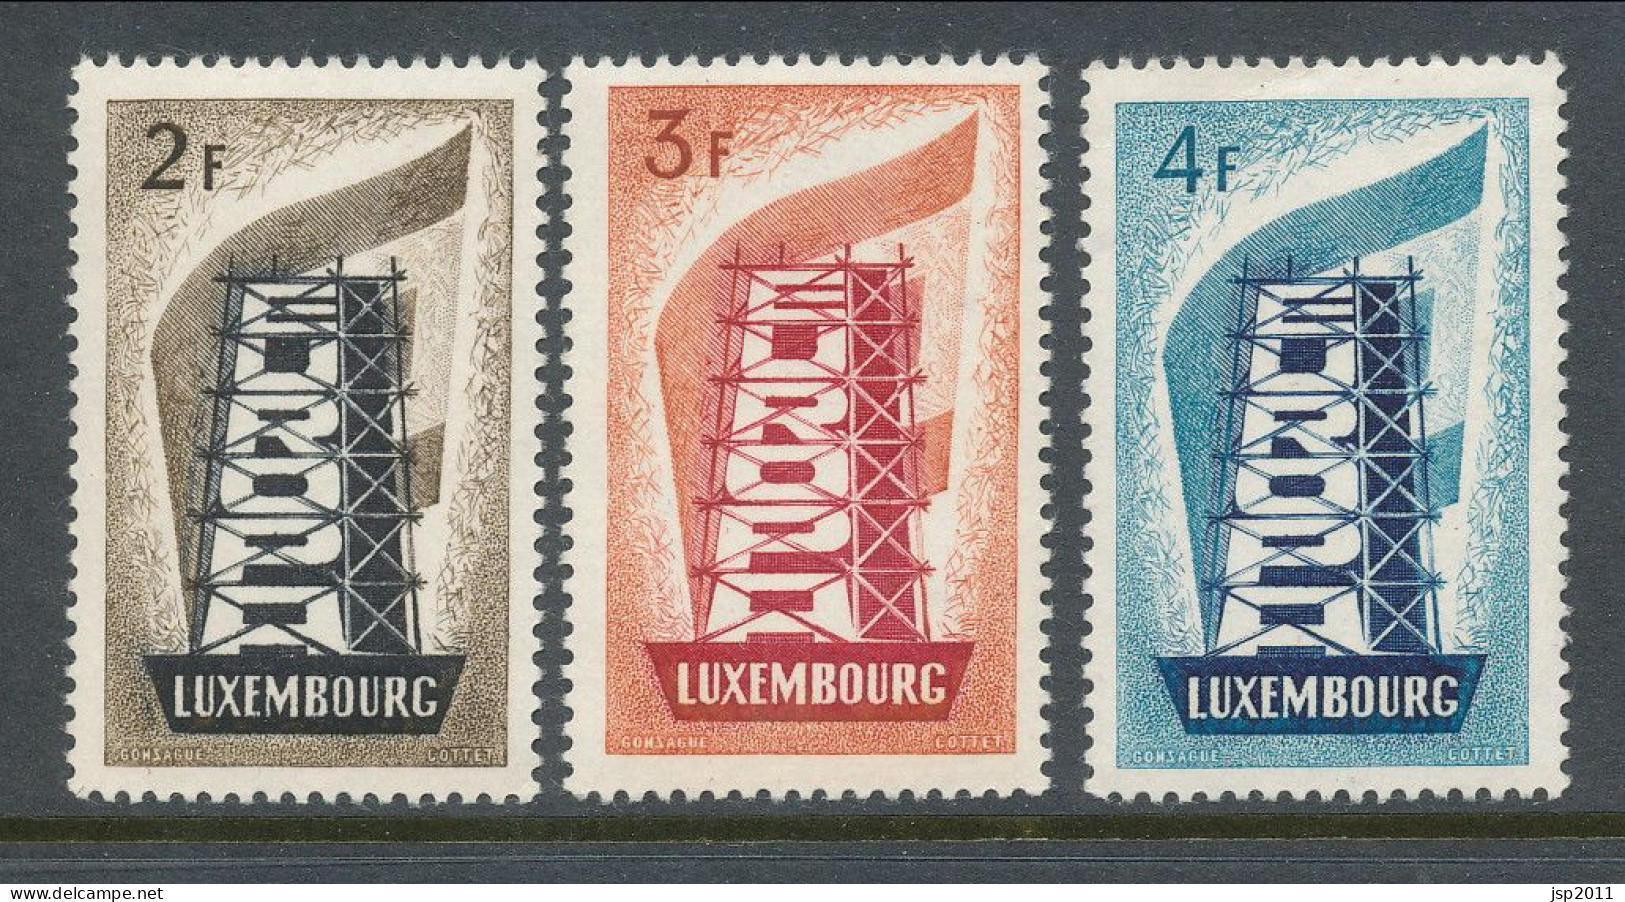 Europa CEPT 1956,  Luxemburg, MNH** - 1956